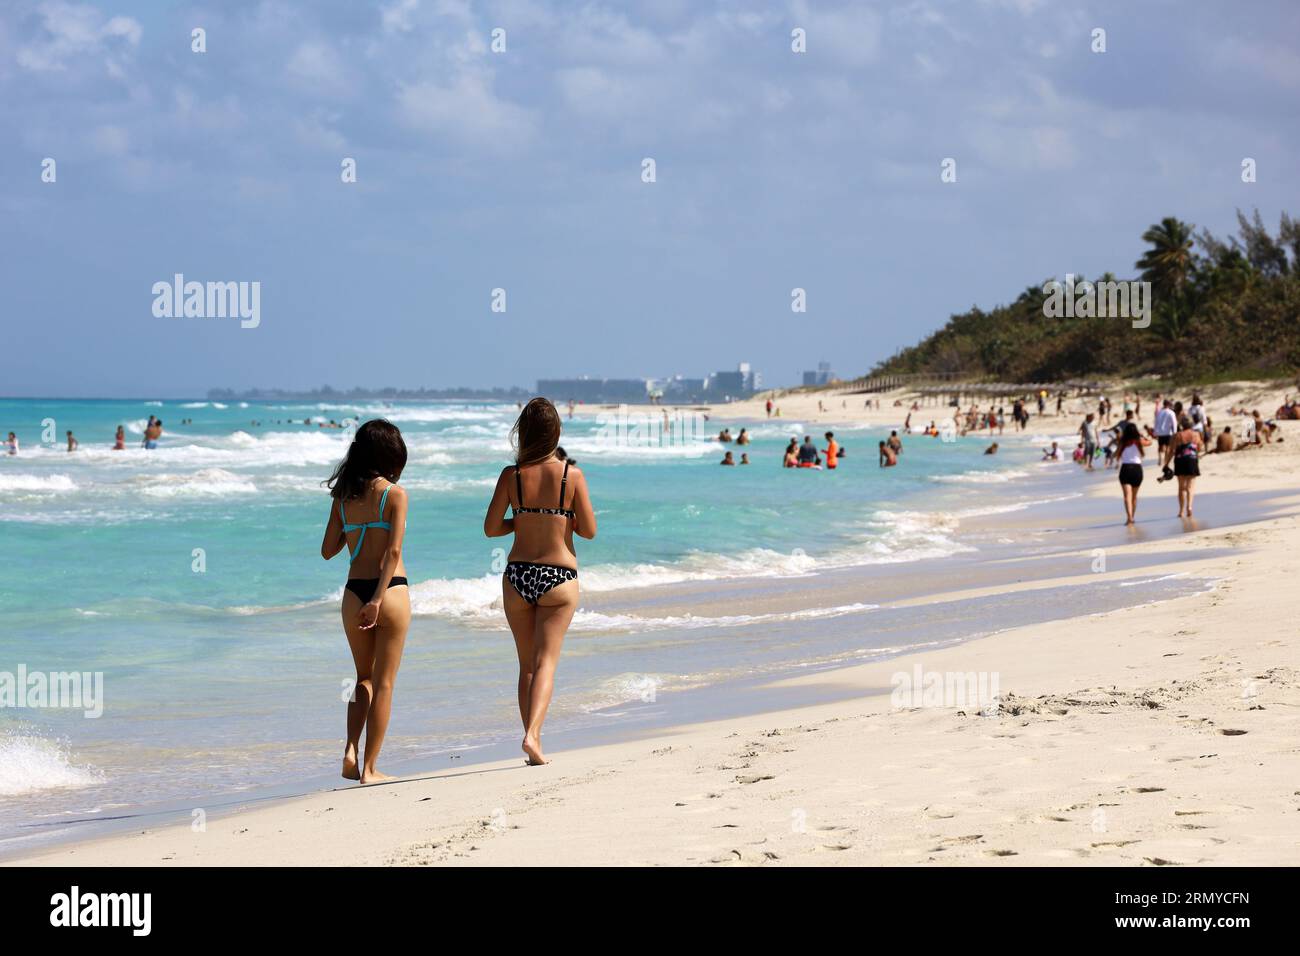 Due ragazze in bikini che camminano sulla sabbia sulla spiaggia tropicale. Costa oceanica, località turistica sull'isola soleggiata Foto Stock